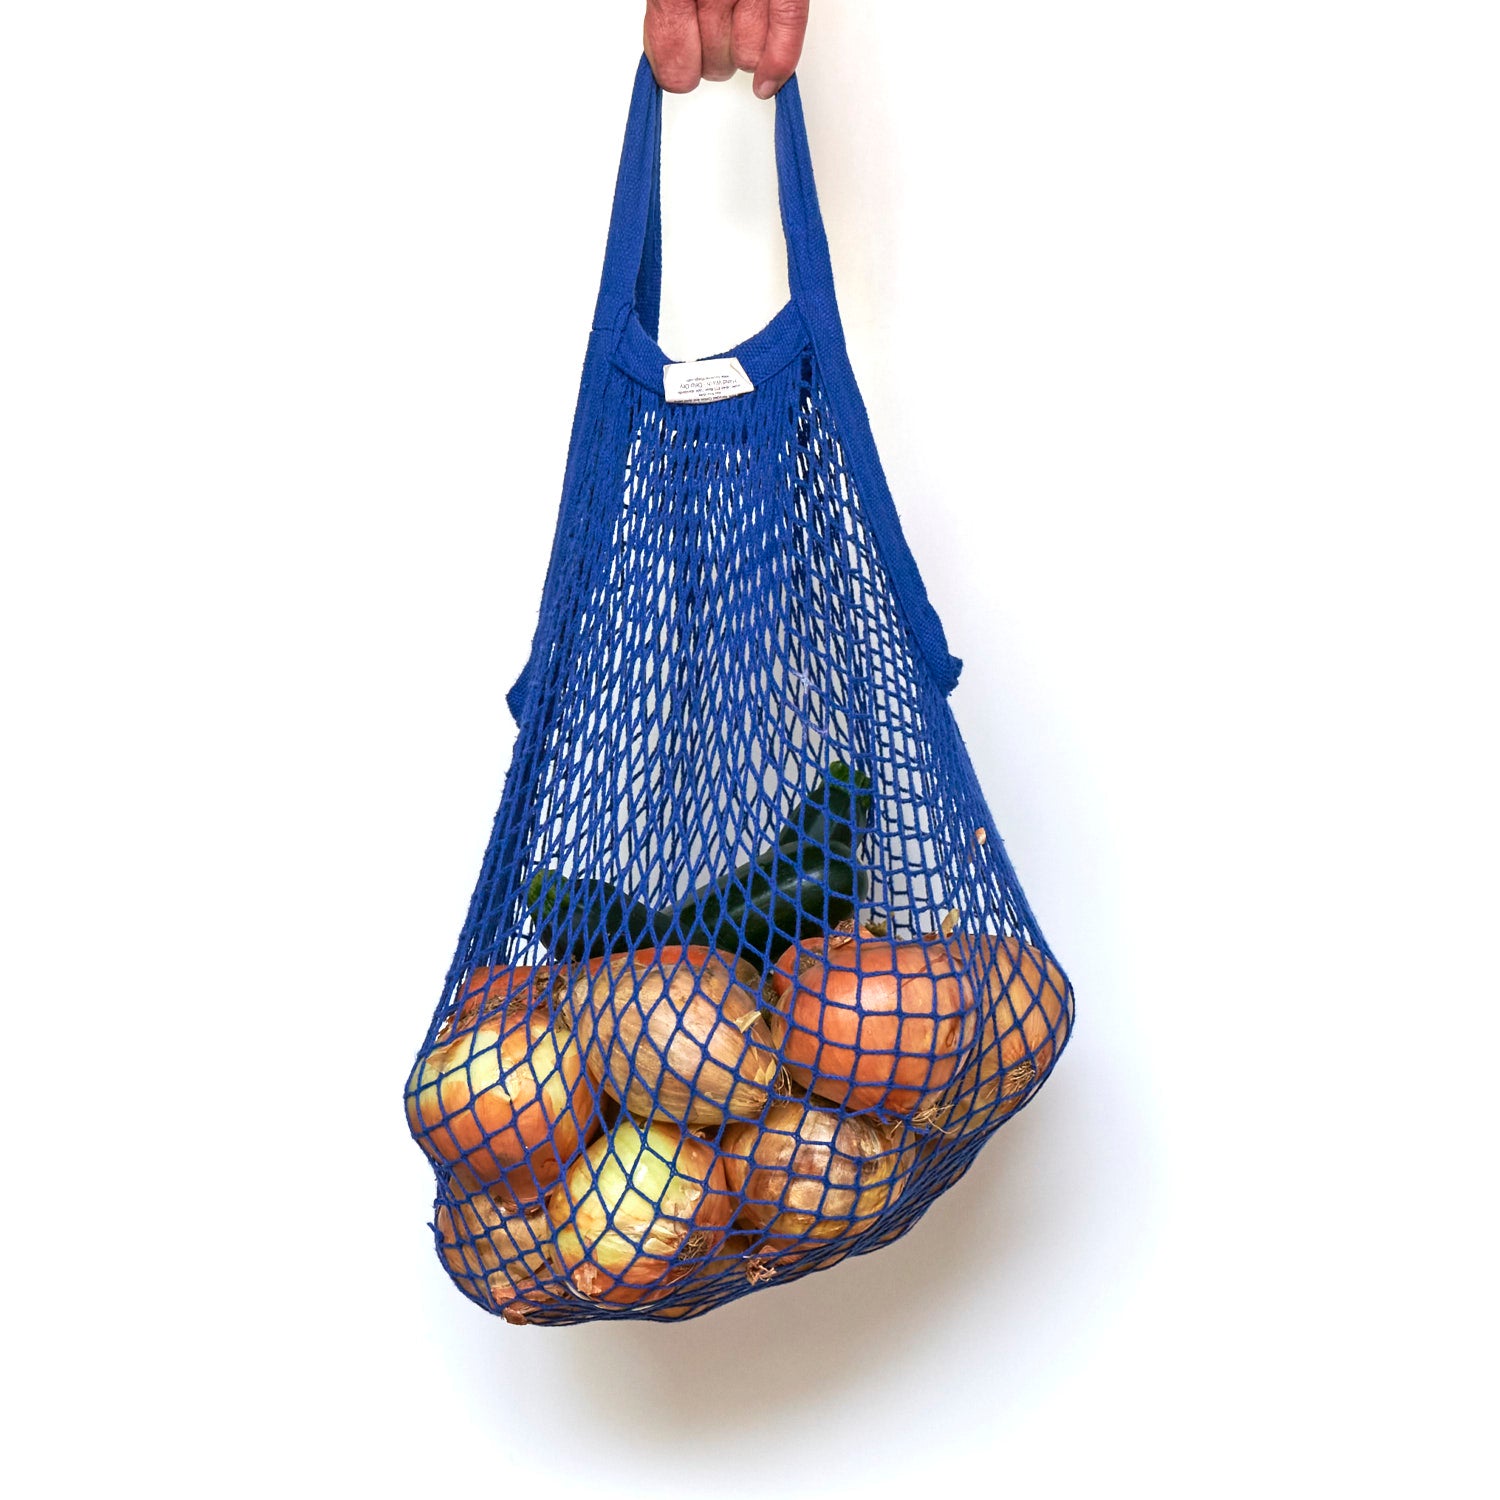 blue string bag carrying vegetables